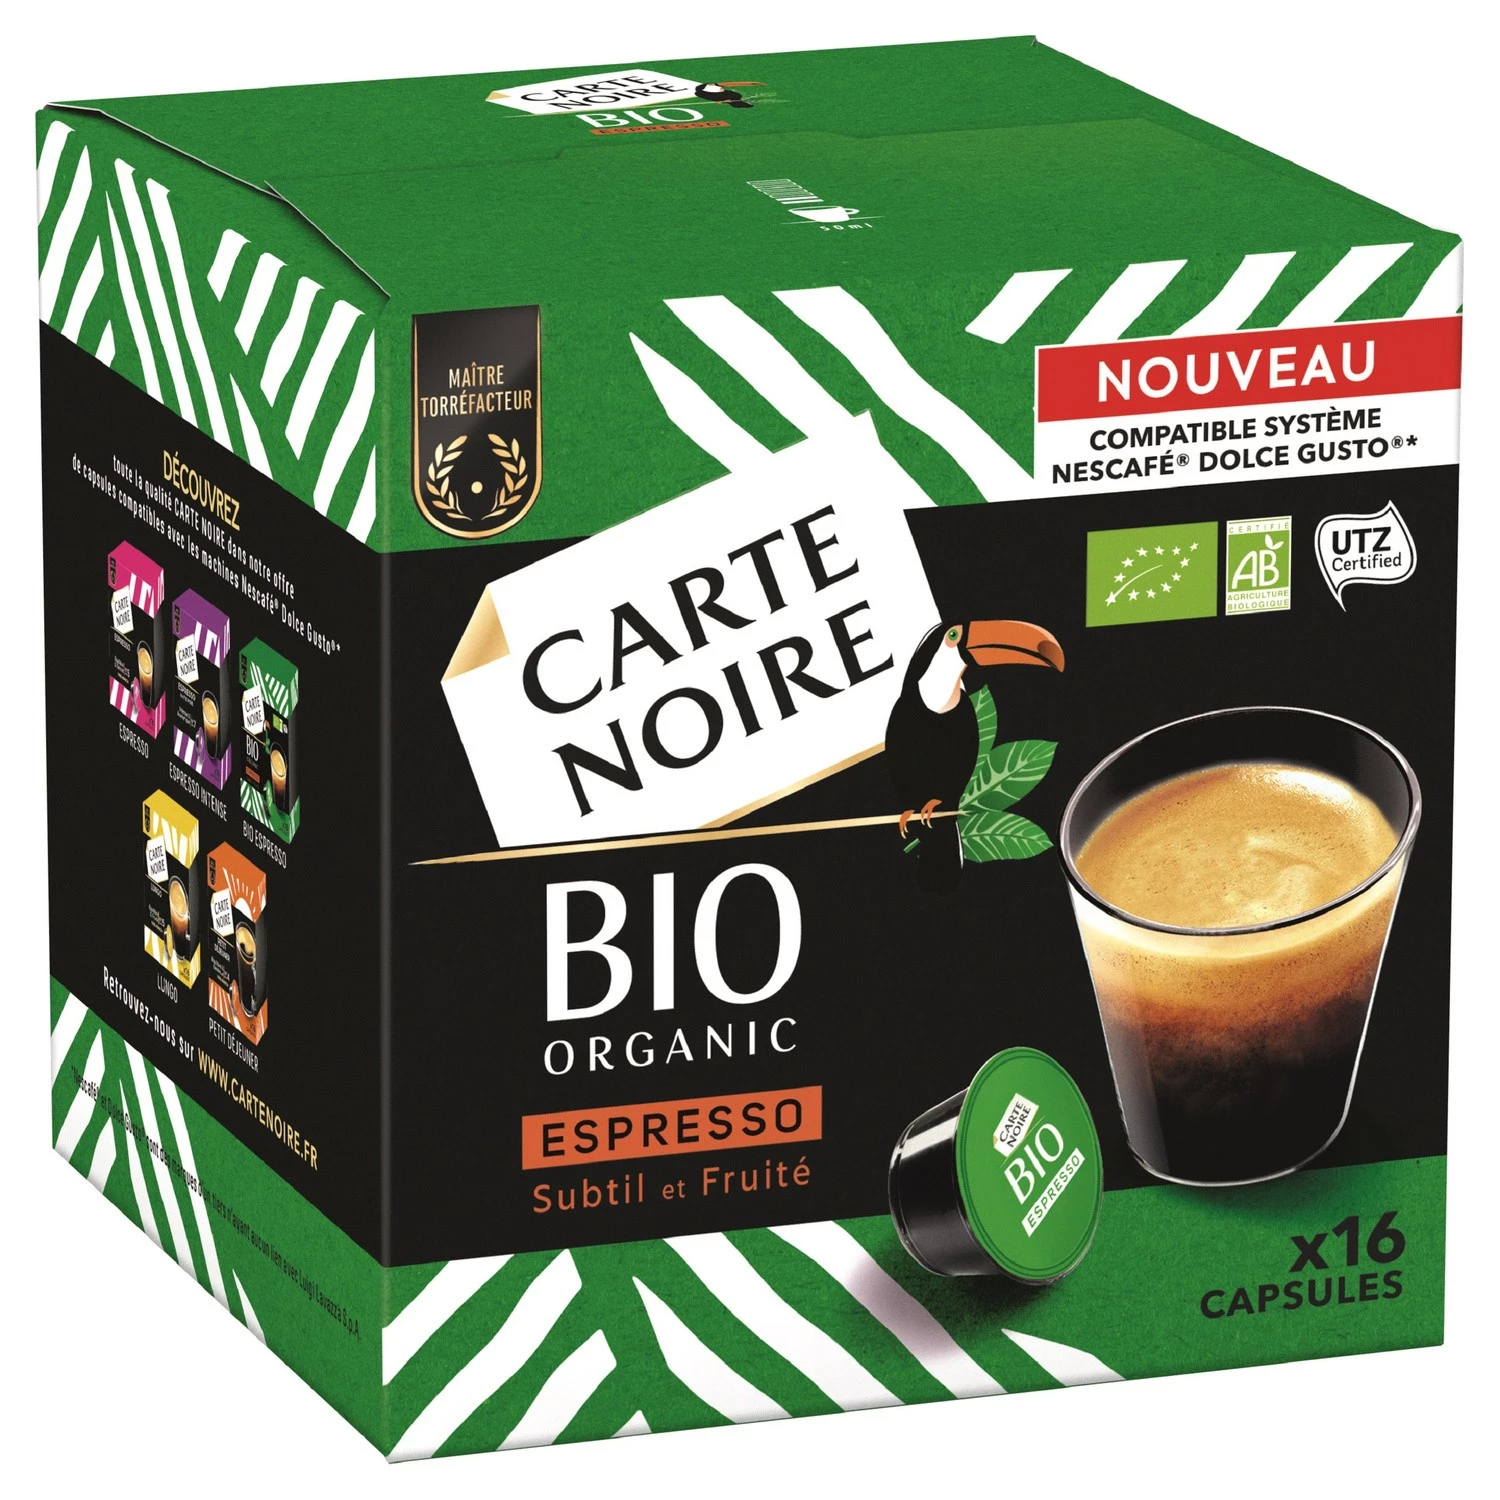 Органический кофе эспрессо с тонким фруктовым ароматом x16 капсул 128г - CARTE NOIRE